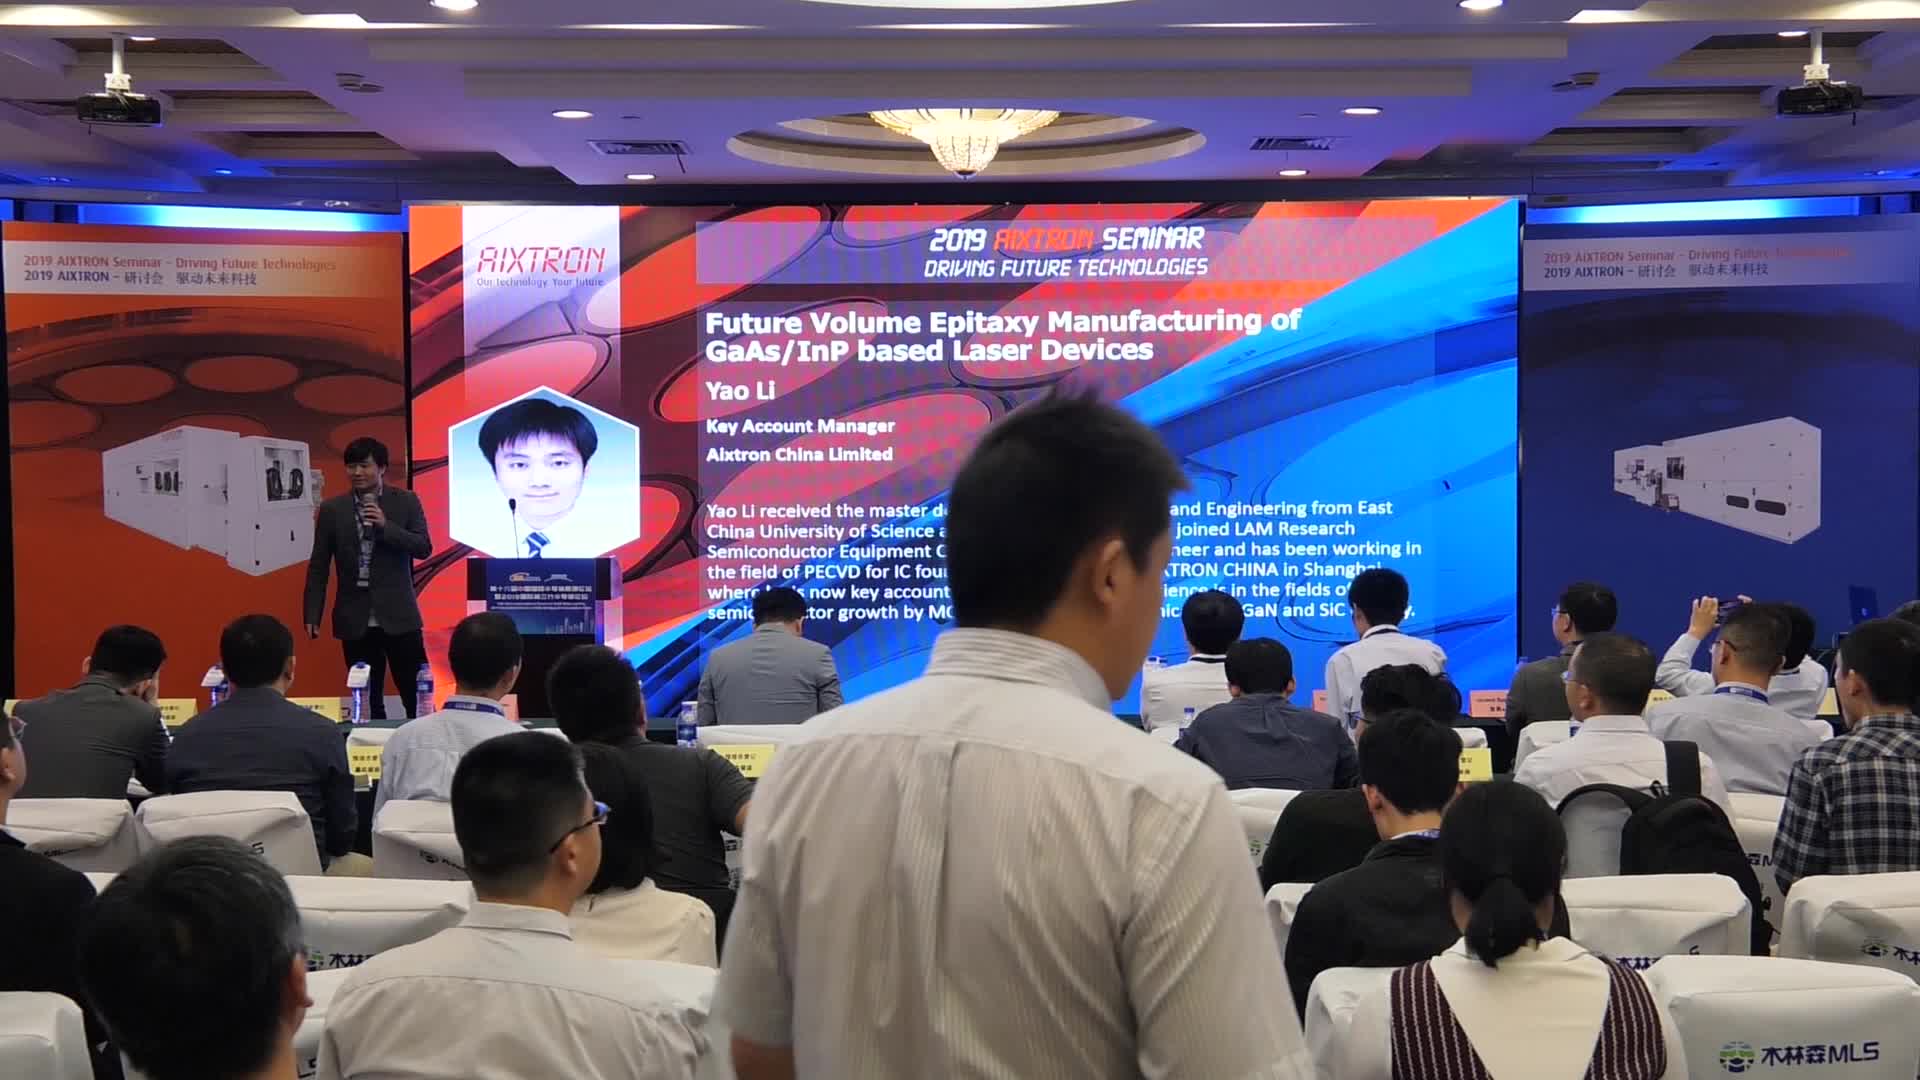 【视频报告 2019】Aixtron China Limited大客户经理李曜：针对未来GaAs/InP基激光器的外延大规模生产